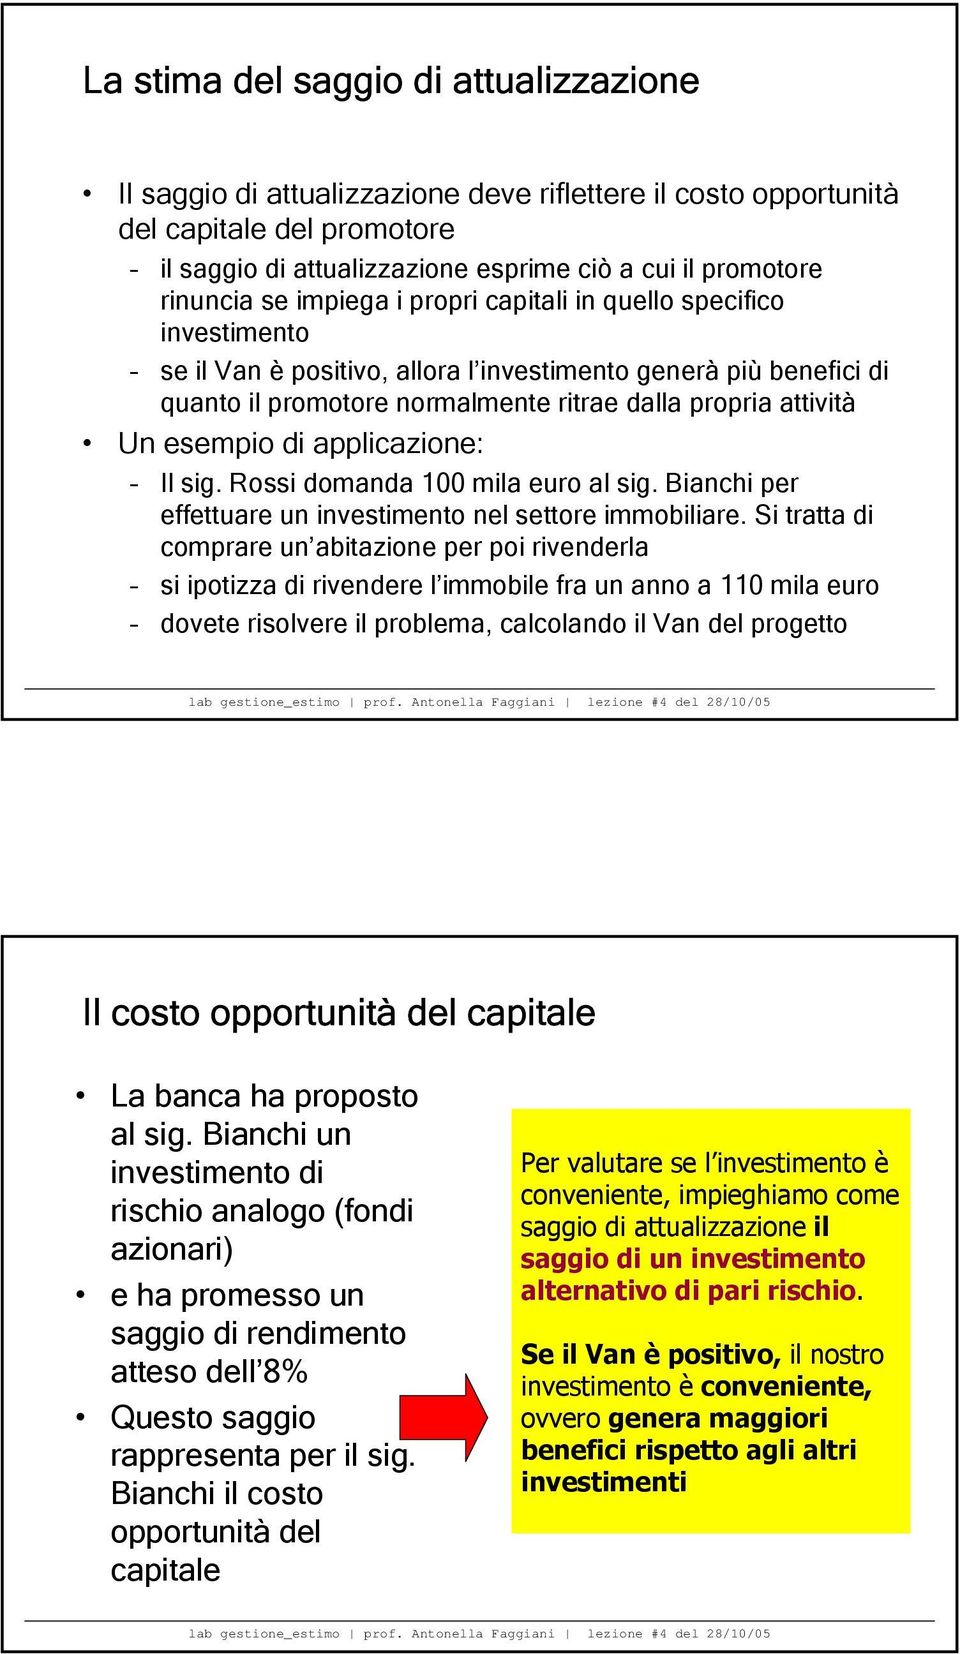 Un esempio di applicazione: Il sig. Rossi domanda 100 mila euro al sig. Bianchi per effettuare un investimento nel settore immobiliare.